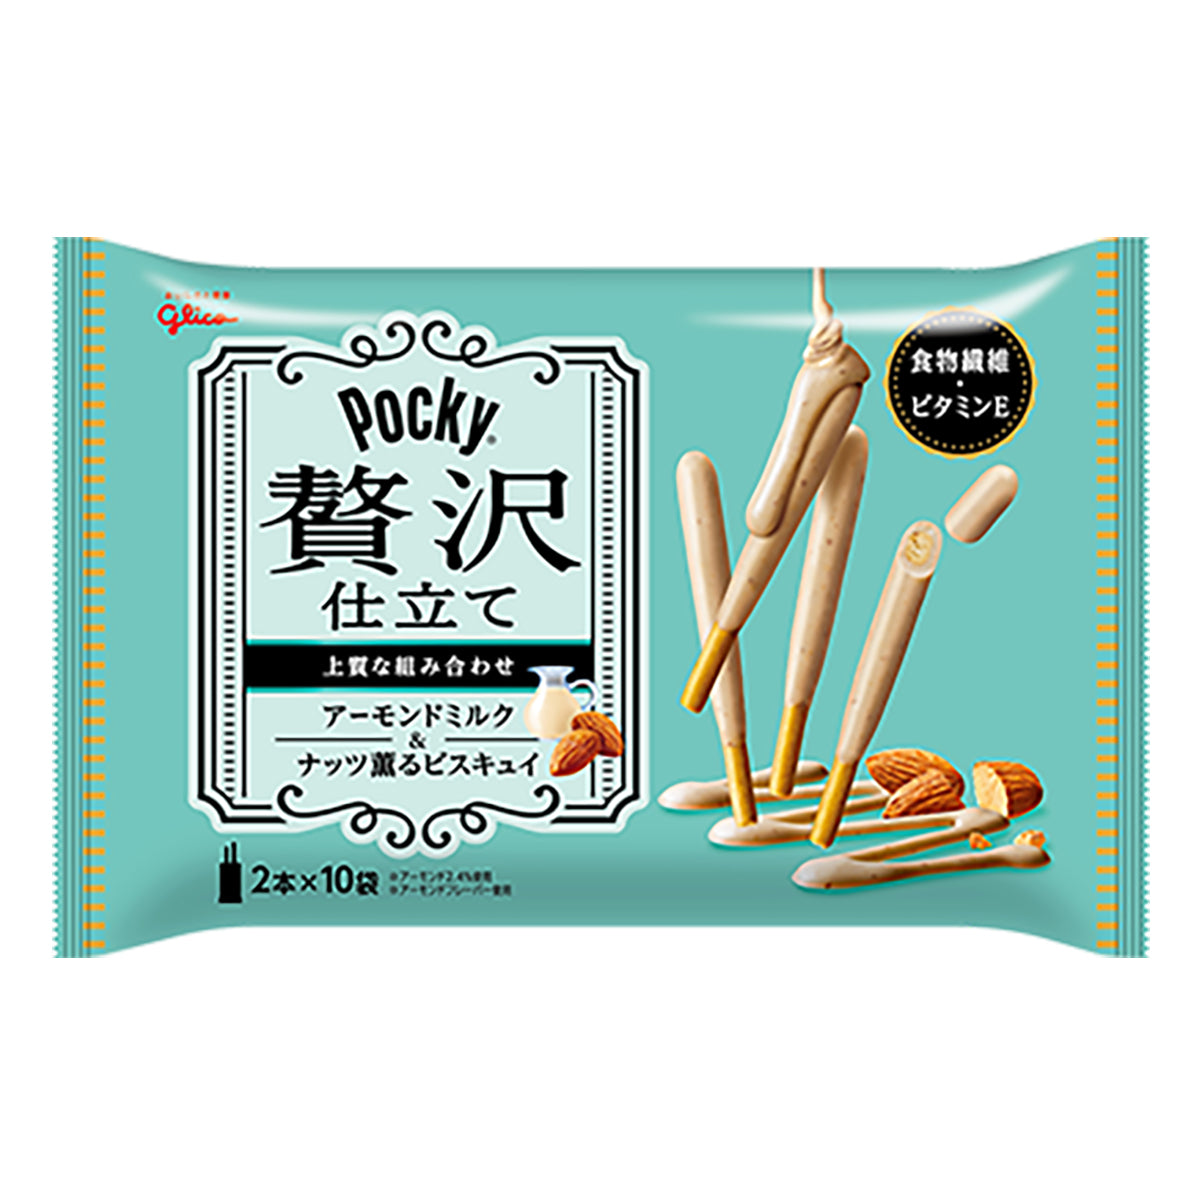 pocky luxury almond milk chocolate biscuit sticks - 3.8oz